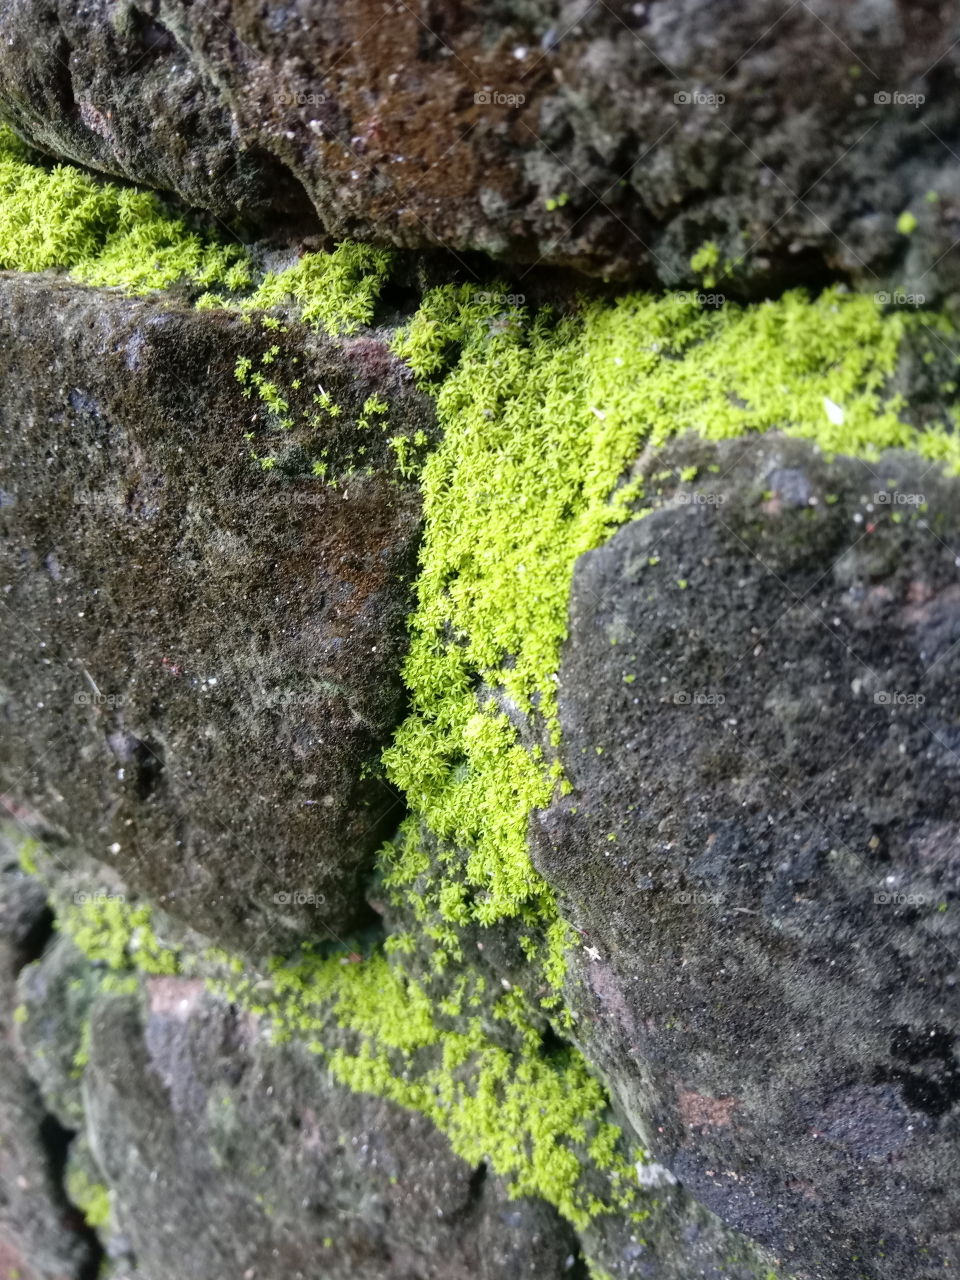 moss or algae